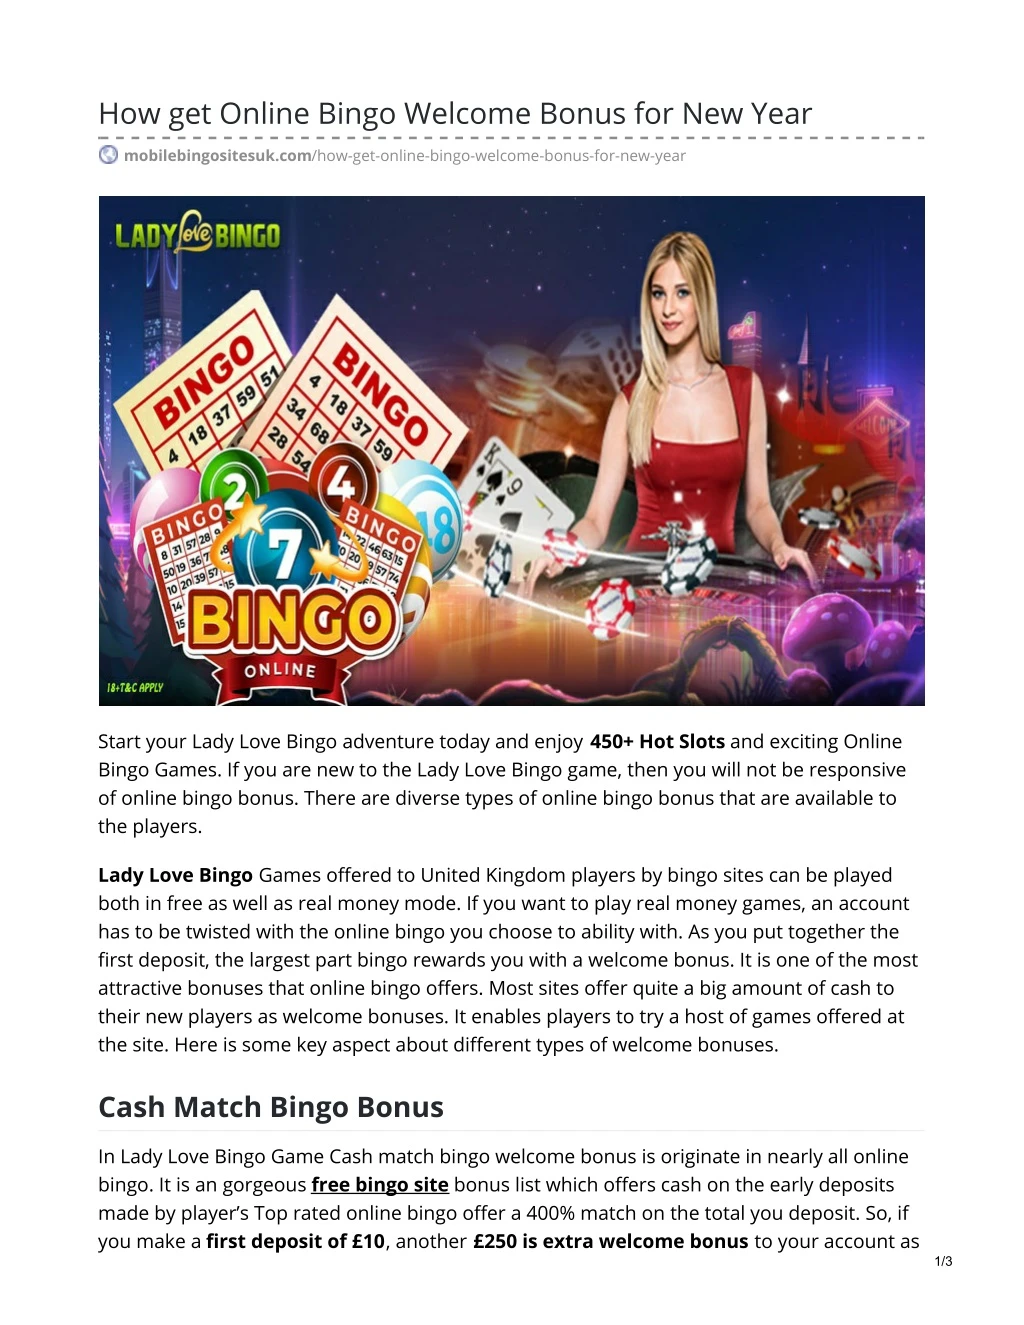 how get online bingo welcome bonus for new year